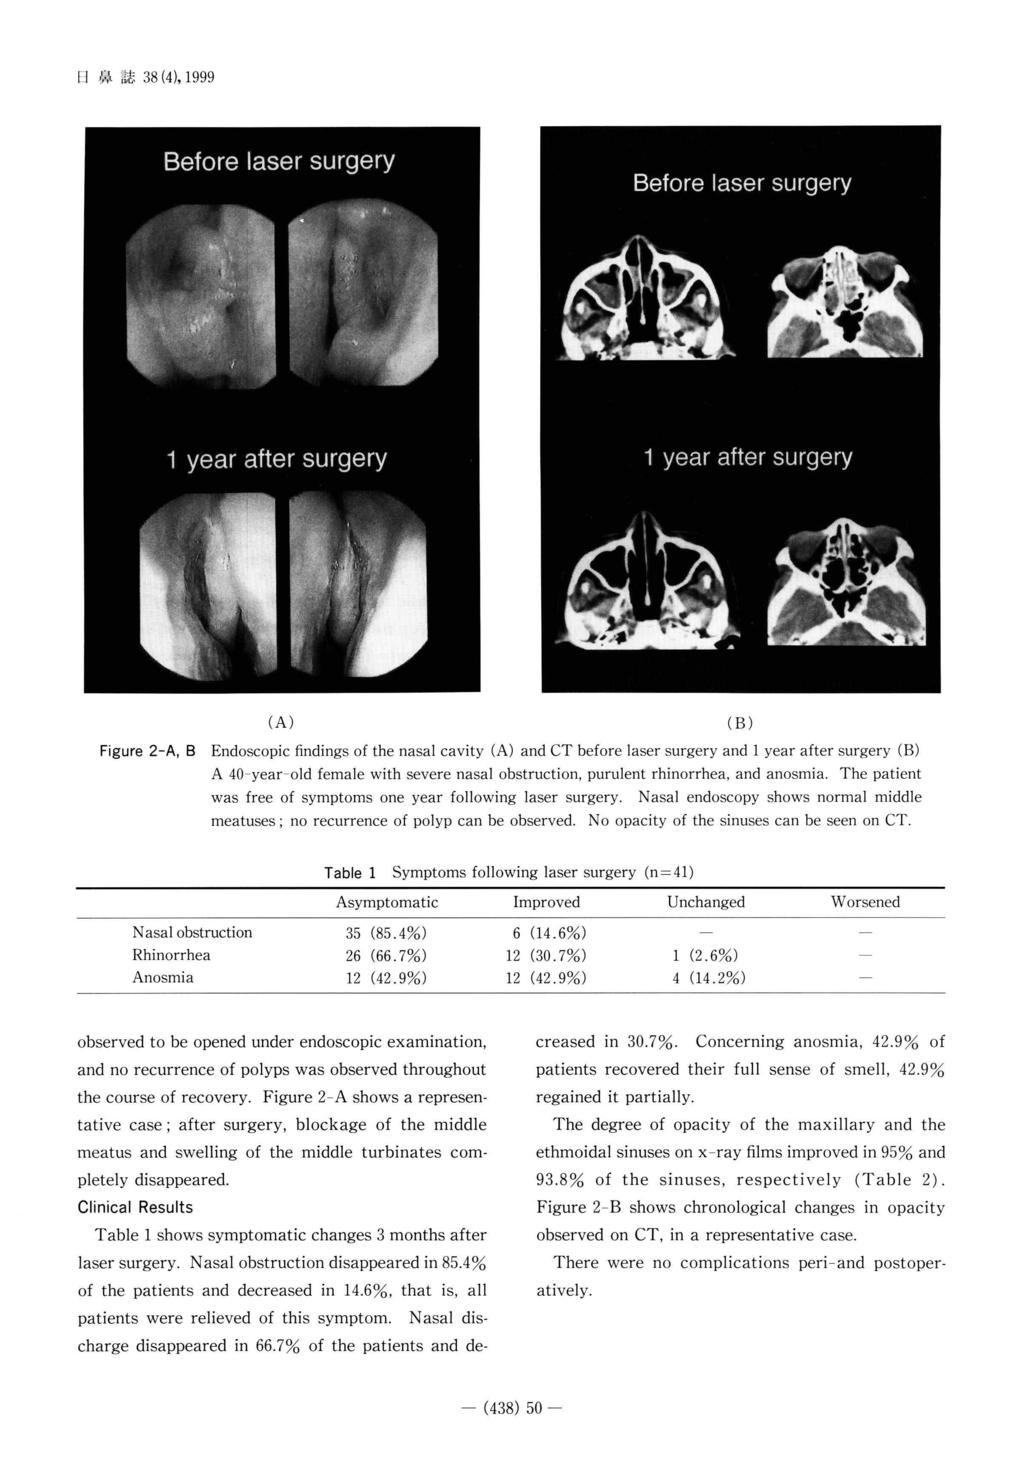 日 鼻 誌38(4), 1999 Figure 2-A, B findings of the nasal cavity A 40-year-old female was free of symptoms es; (A) and CT before laser surgery with severe nasal one year no recurrence obstruction,